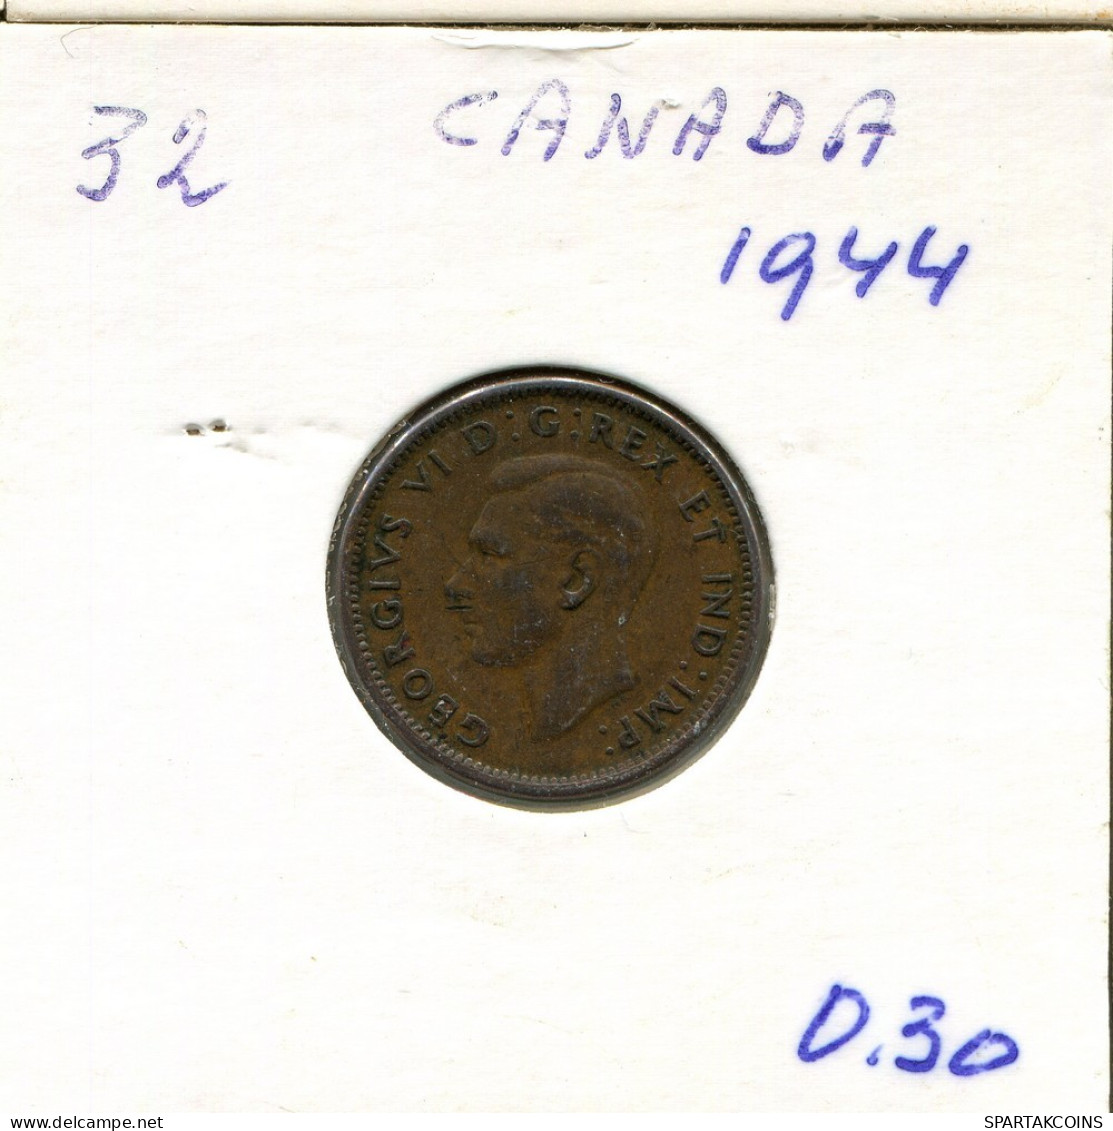 1 CENT 1944 CANADA Coin #AR436.U.A - Canada